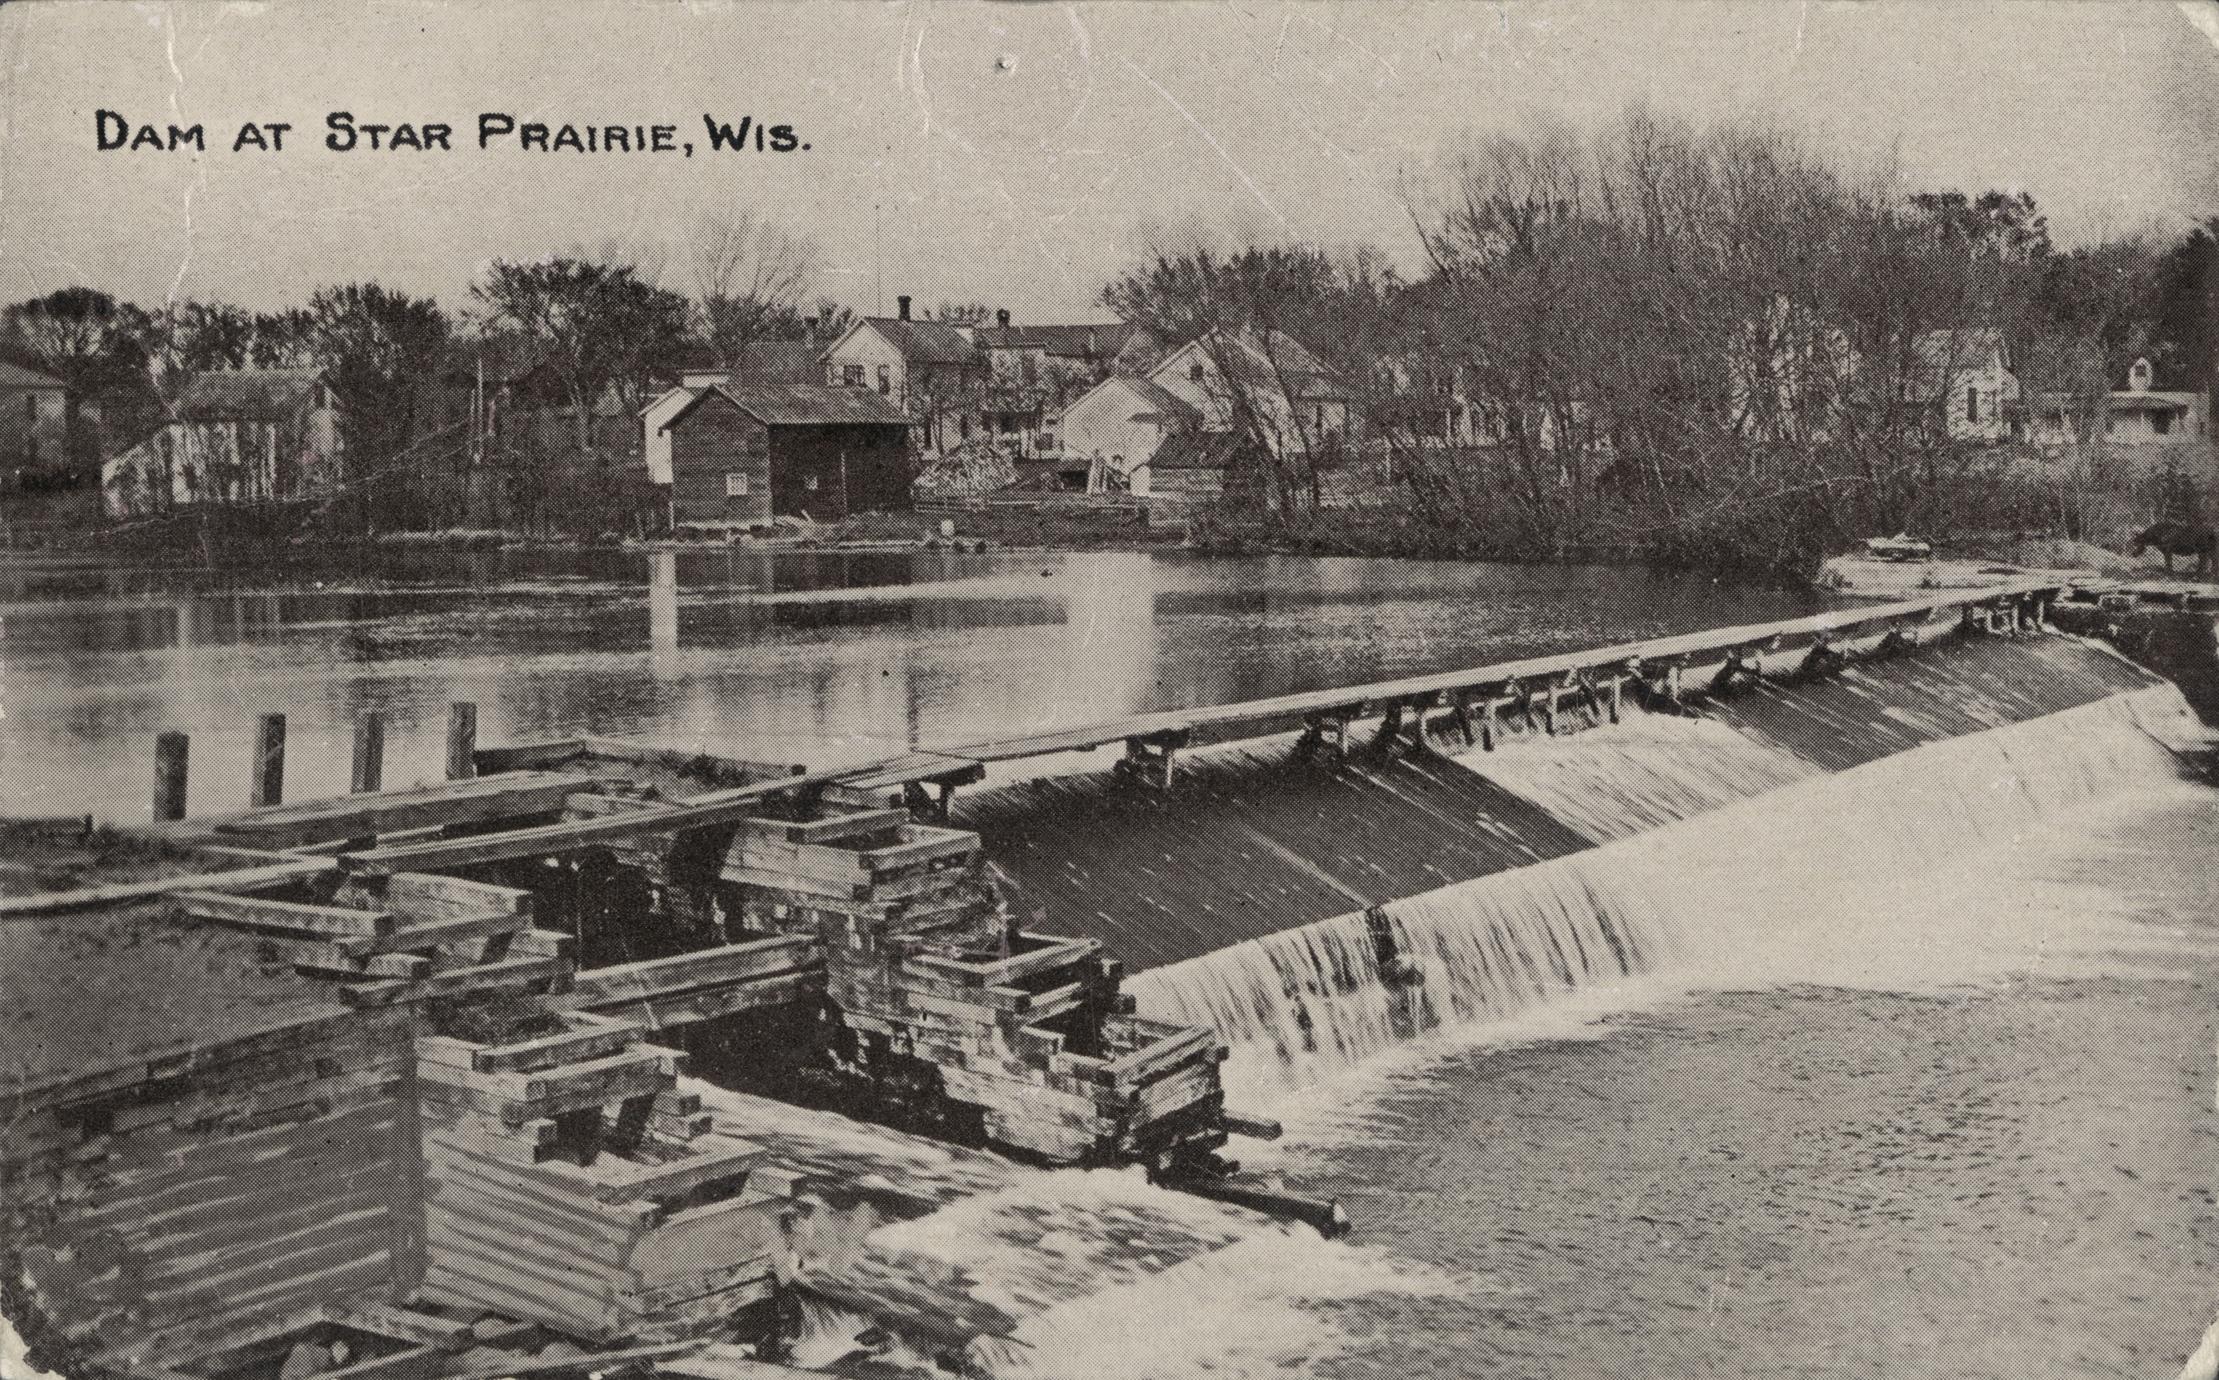 Dam at Star Prairie, Wisconsin